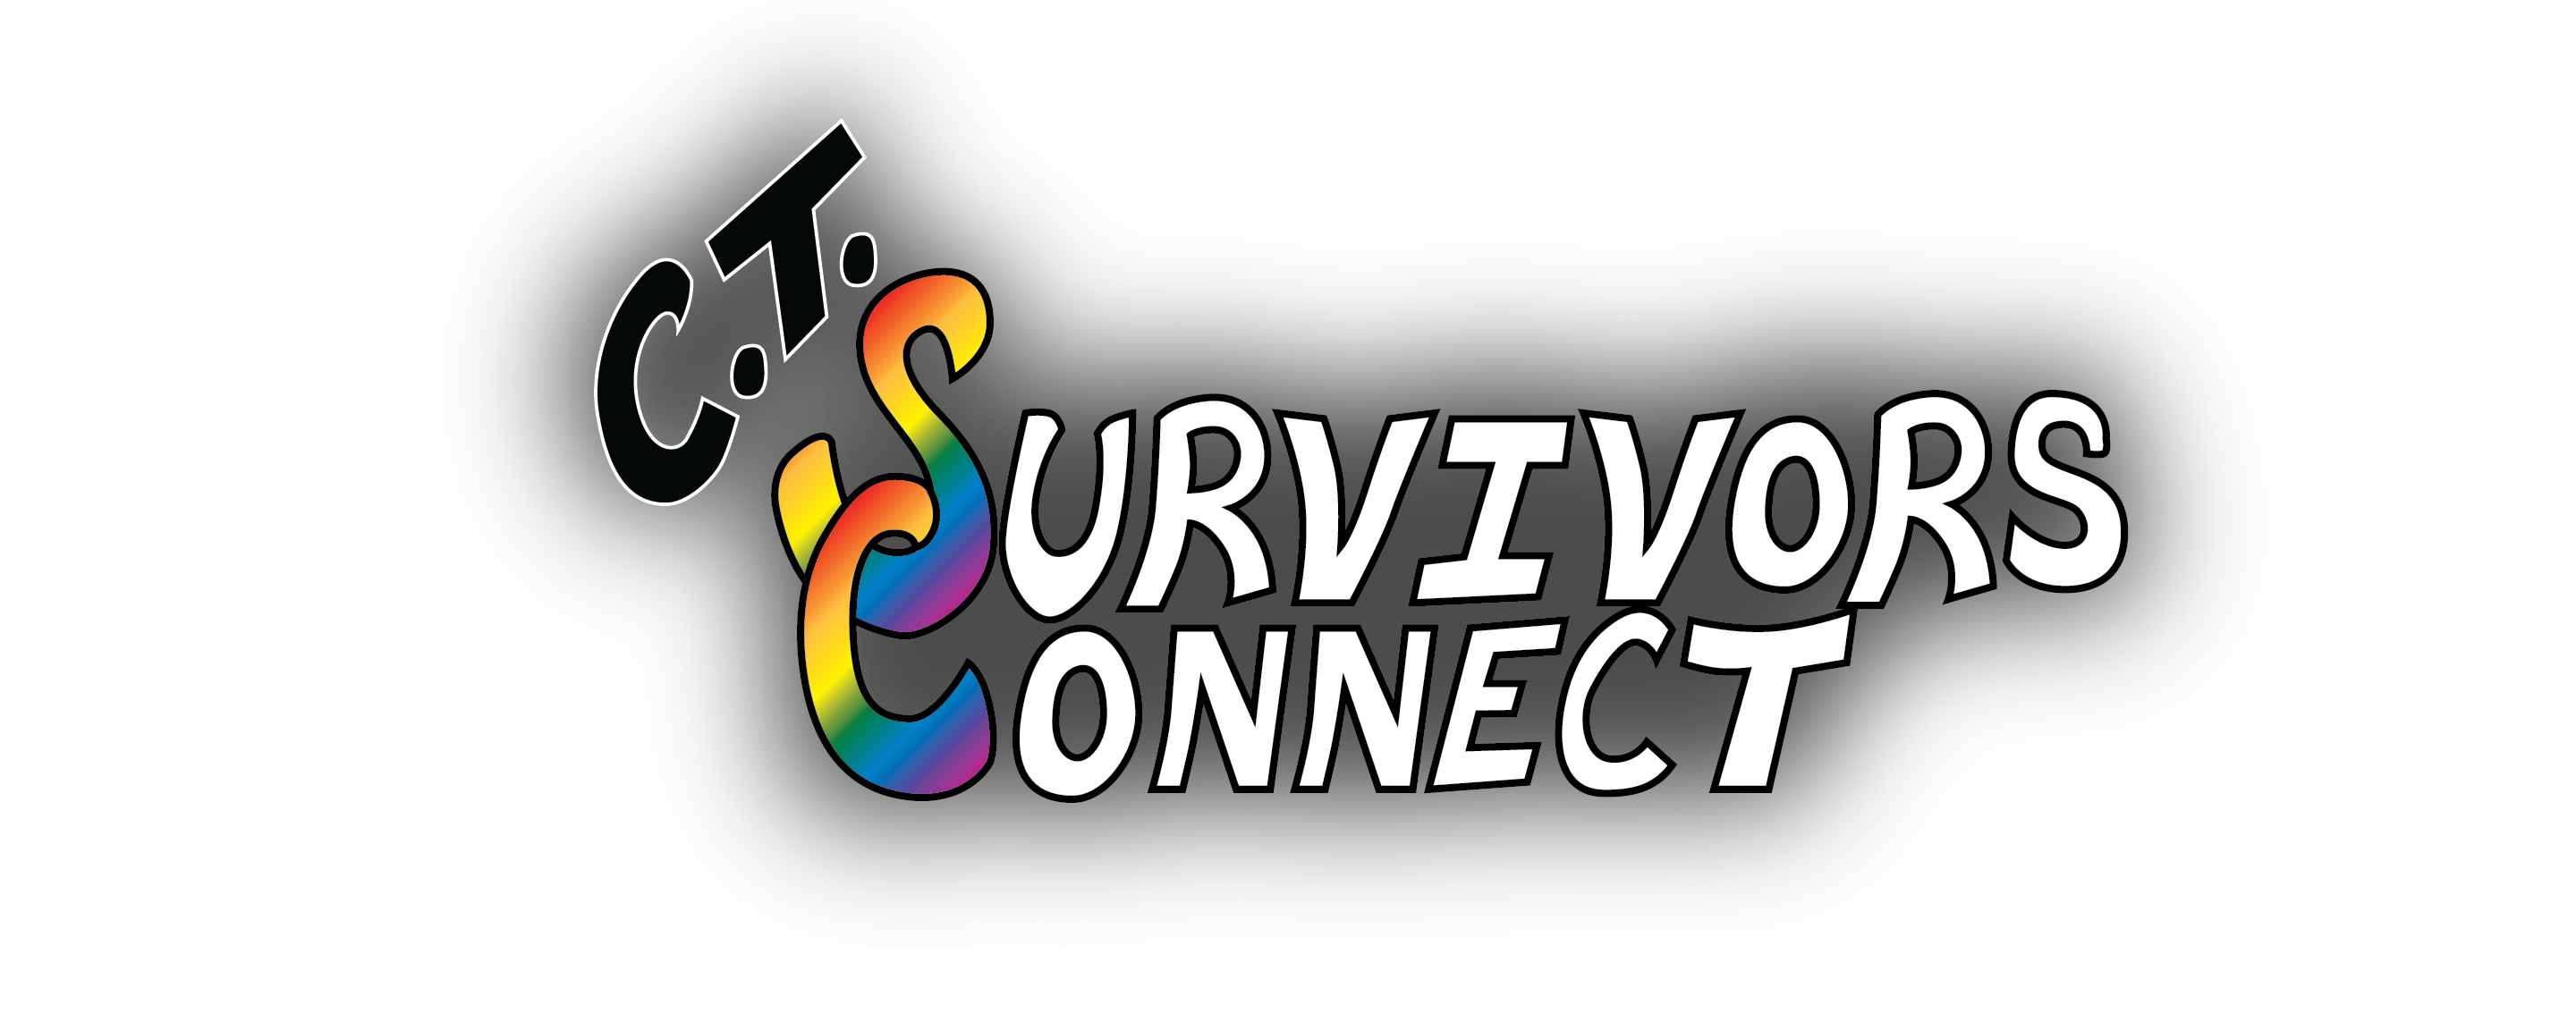 Ct Survivors Connect